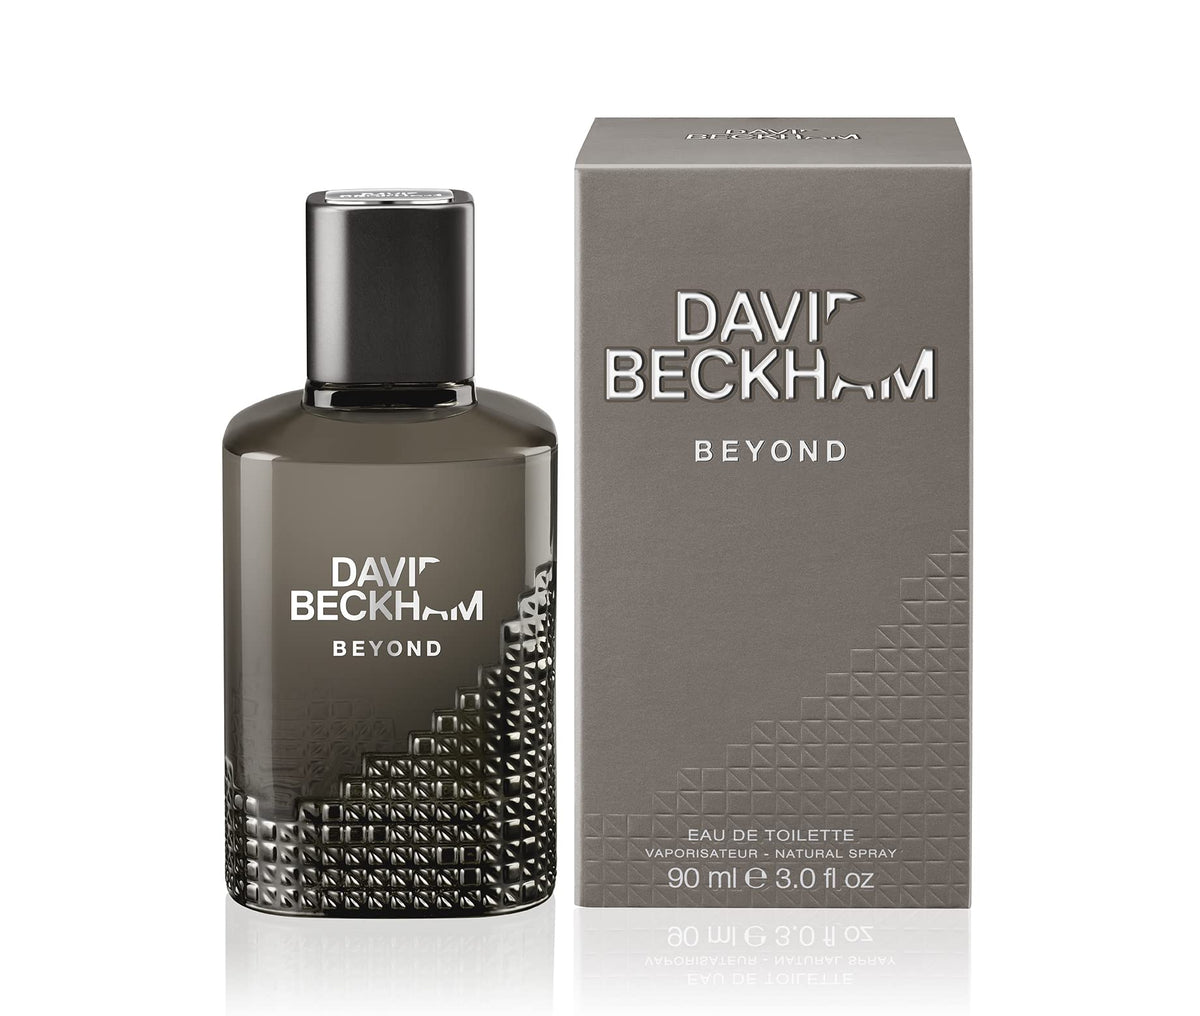 DAVID BECKHAM BEYOND (M) EDT 90ML BY DAVID BECKHAM - Intense oud